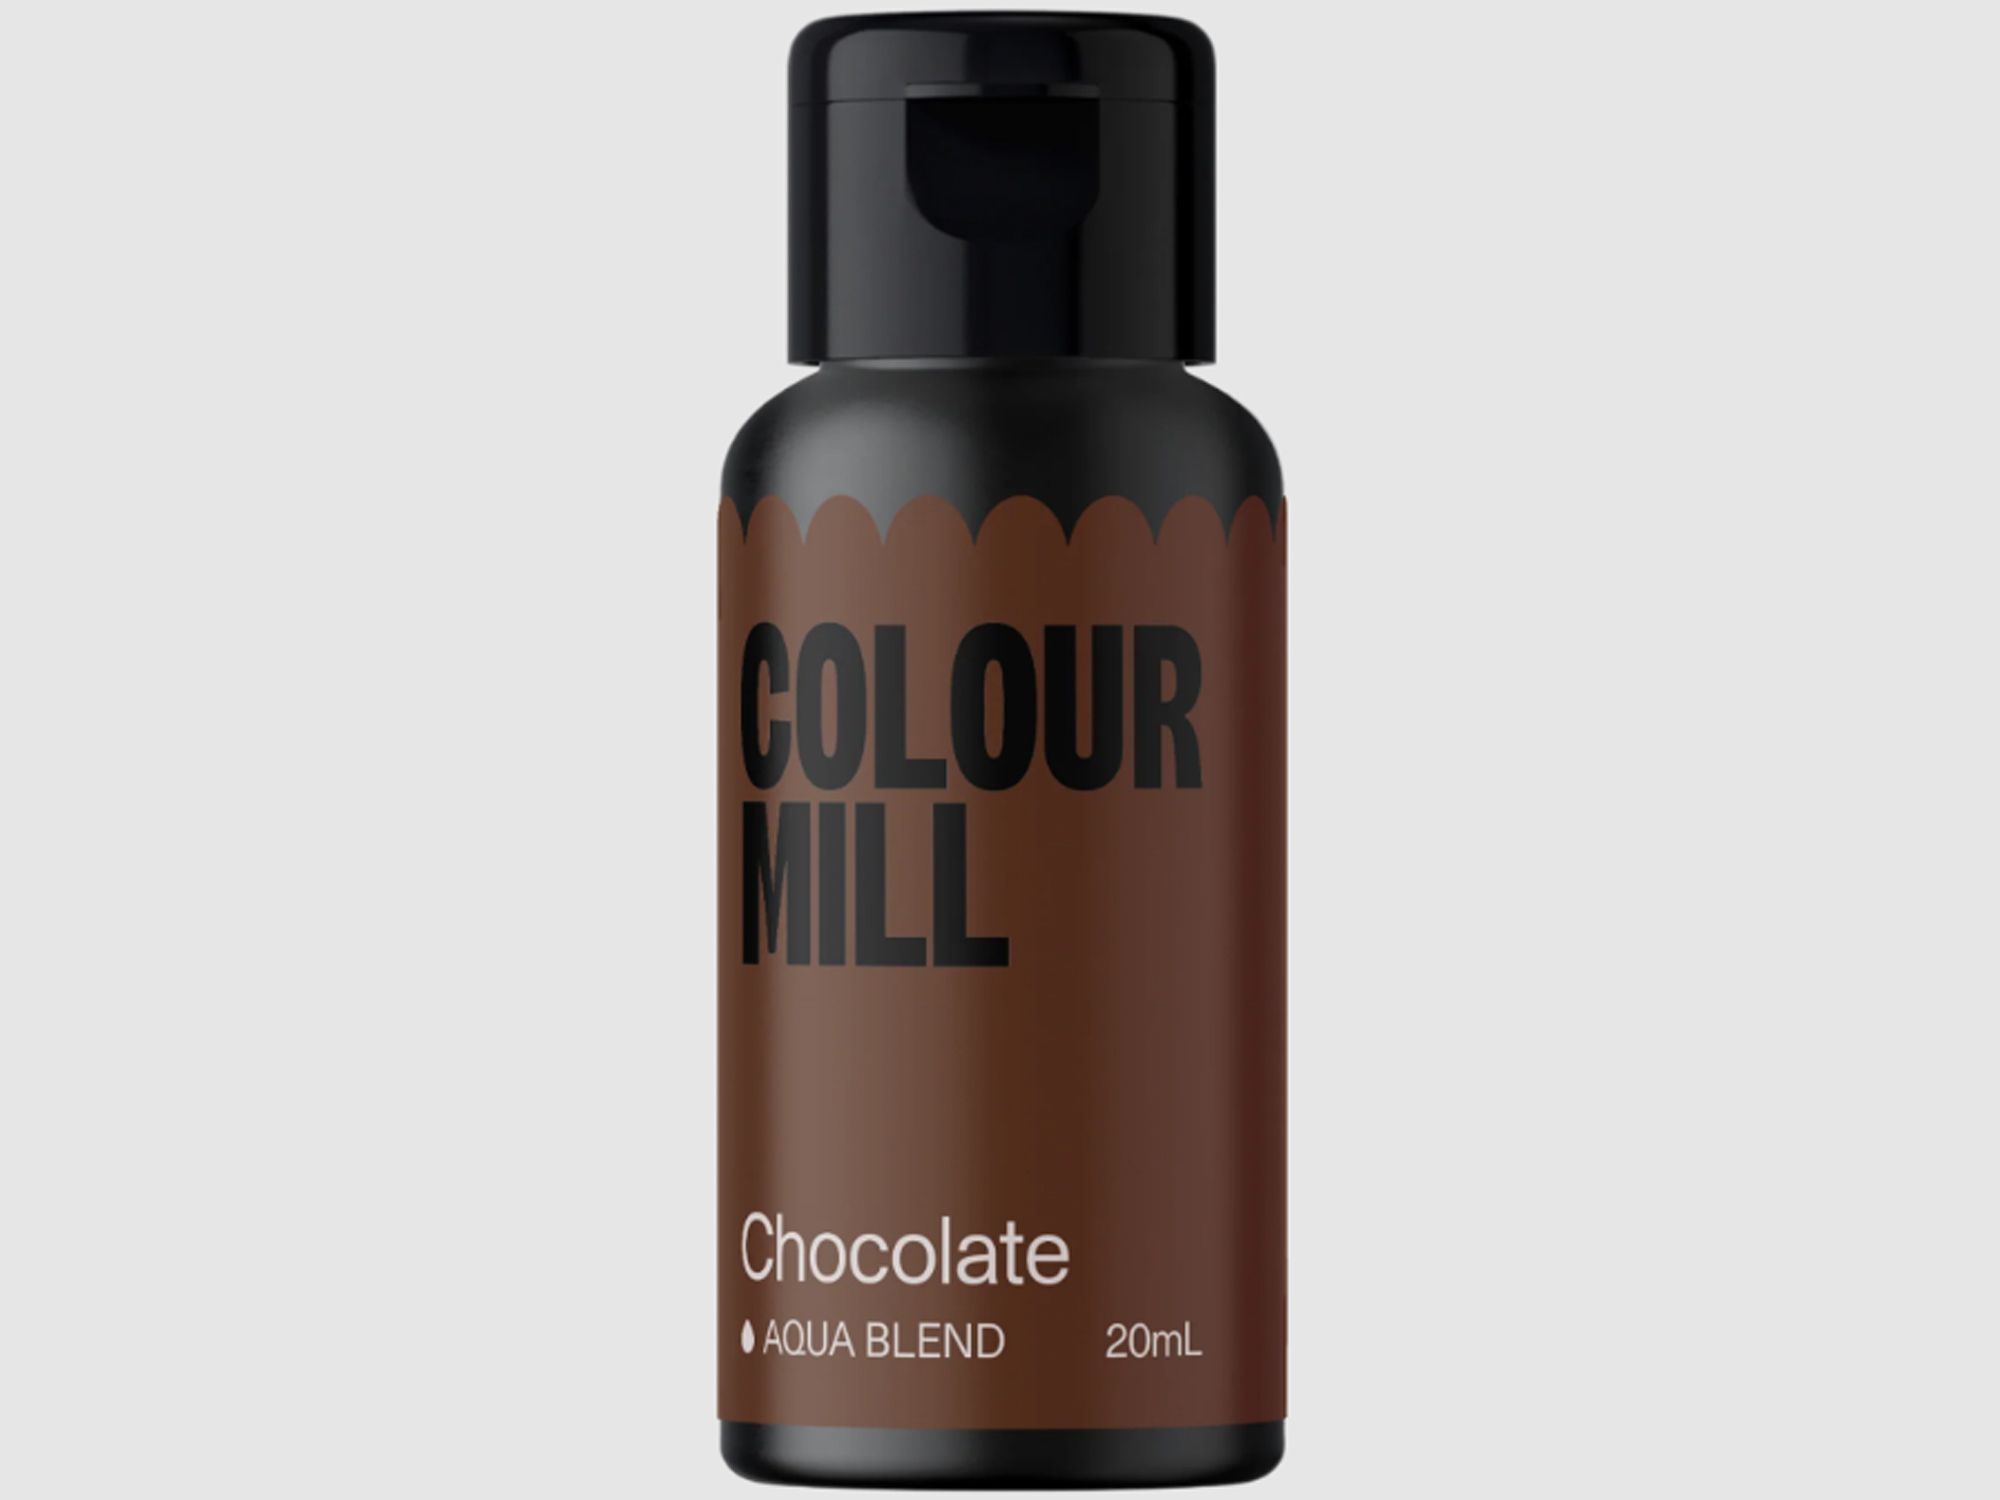 Colour Mill Chocolate (Aqua Blend) 20ml